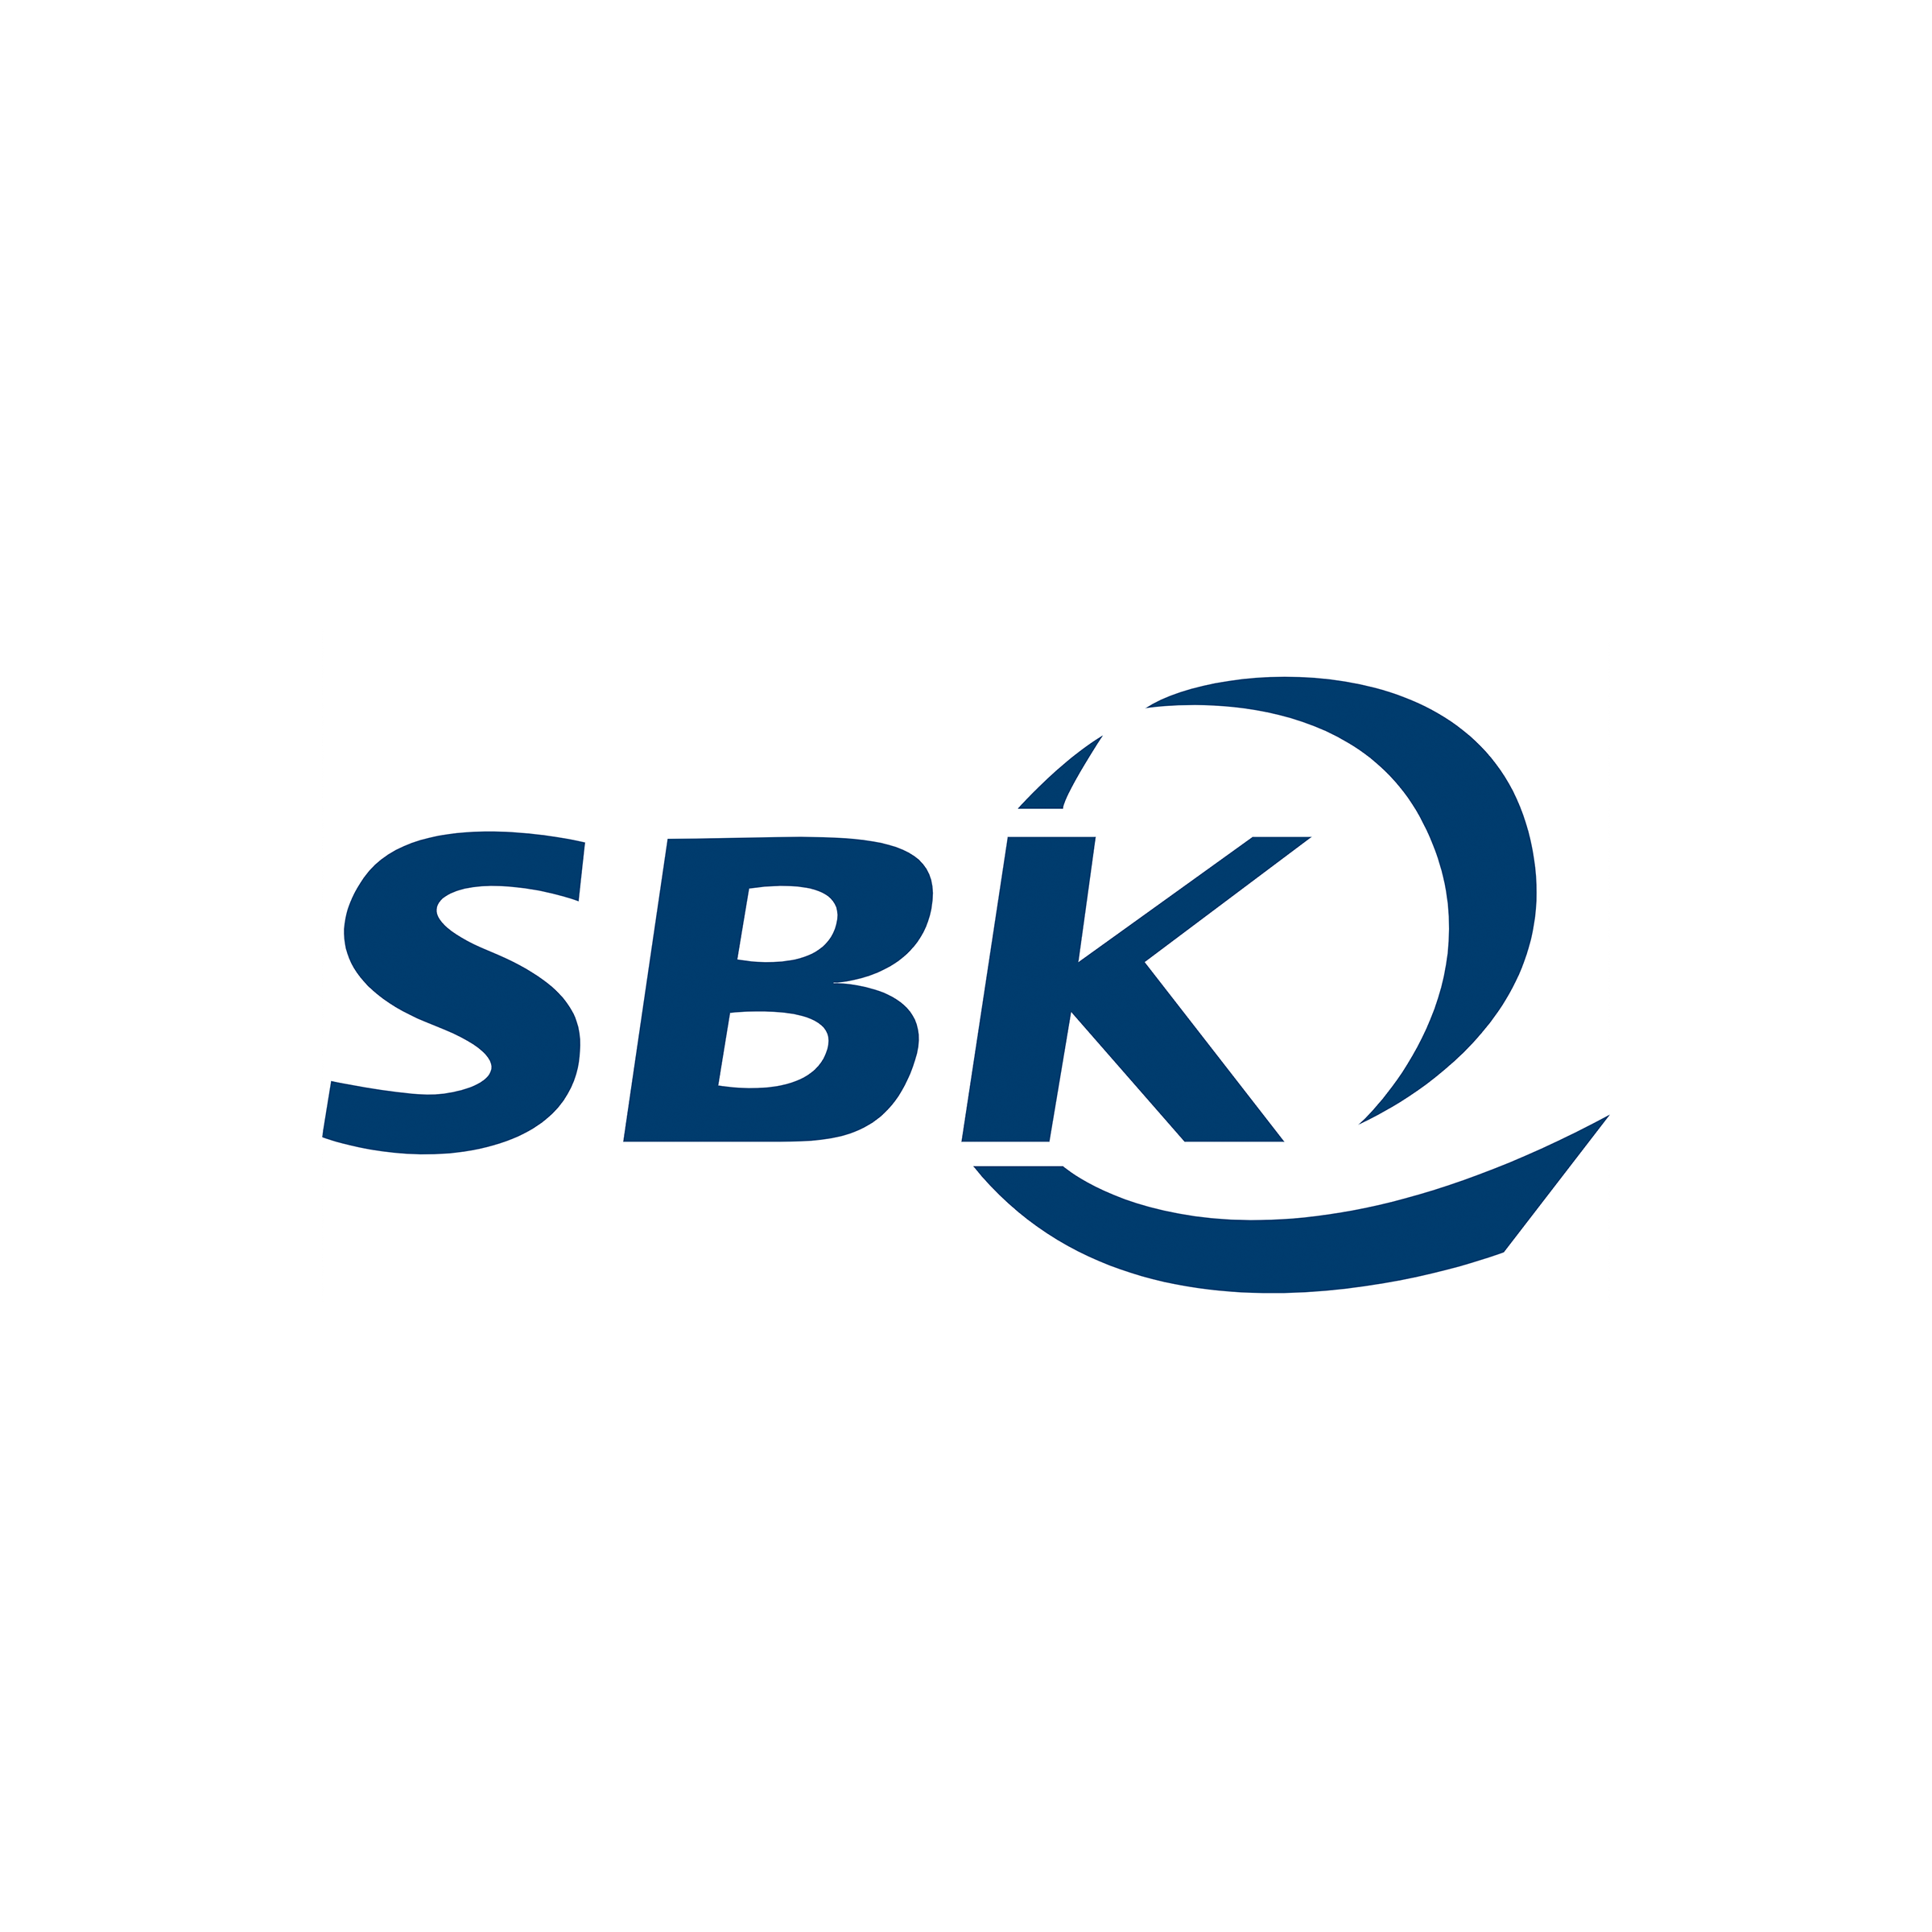 sbk website